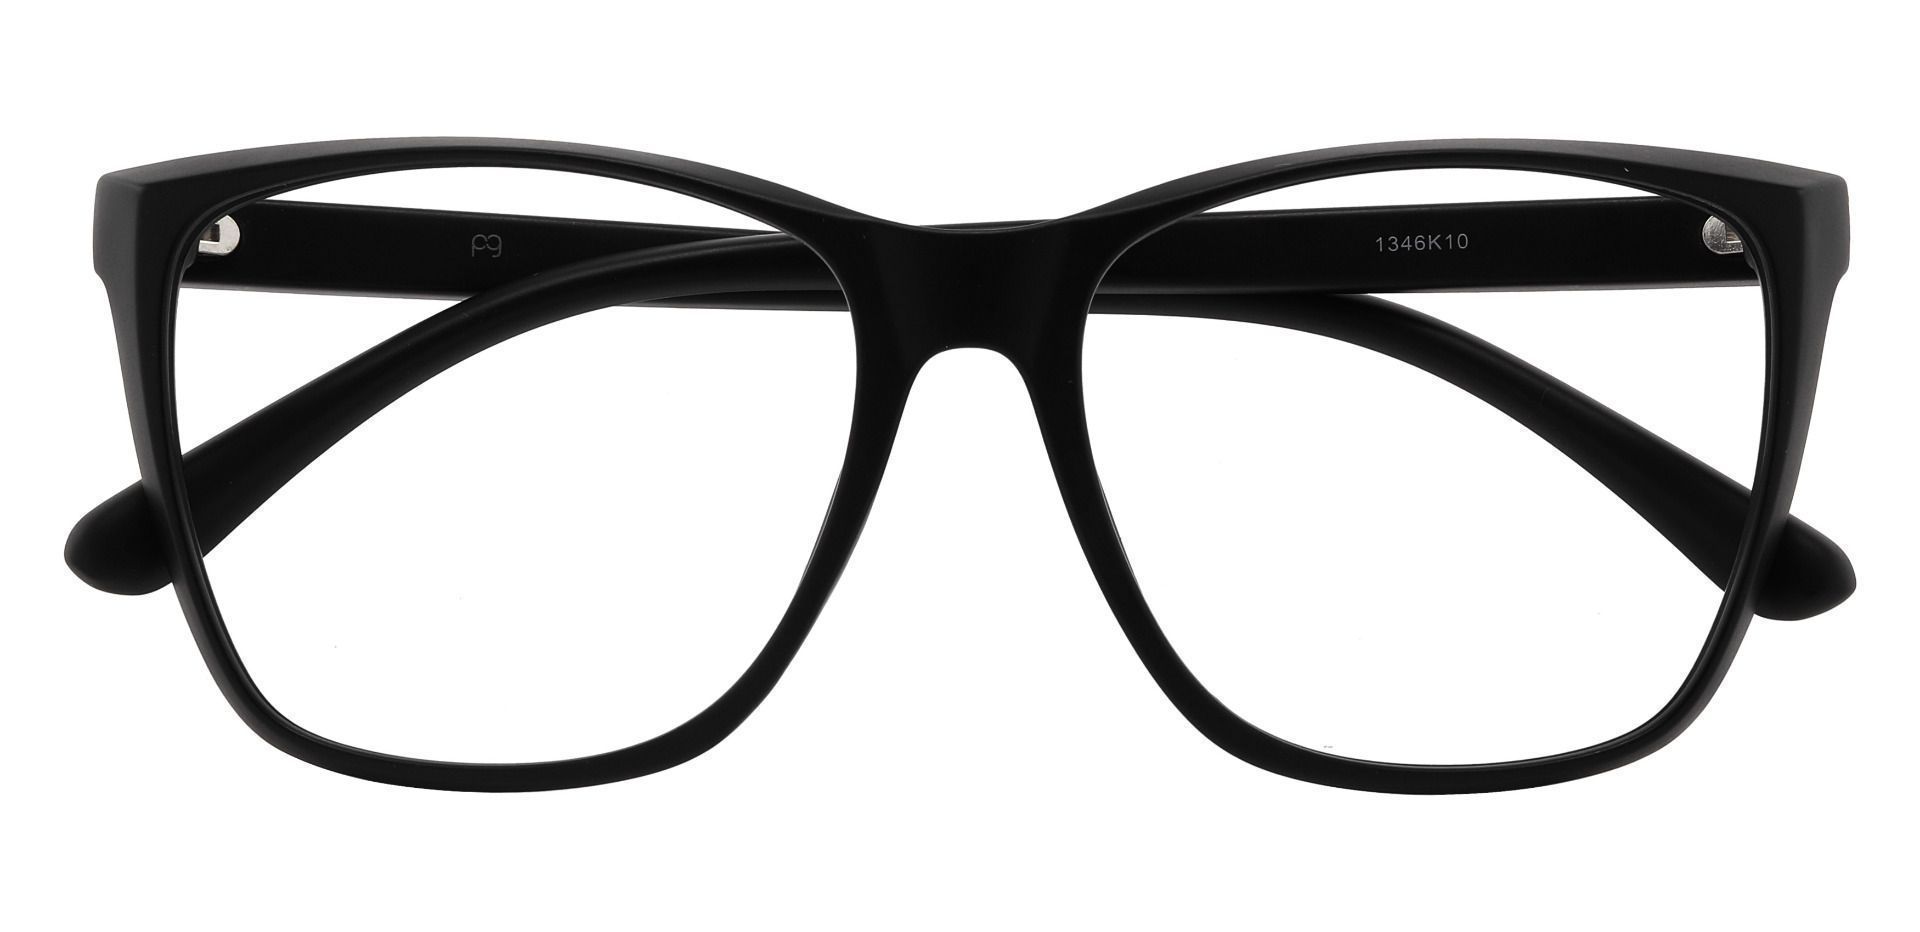 Taryn Square Prescription Glasses - Black